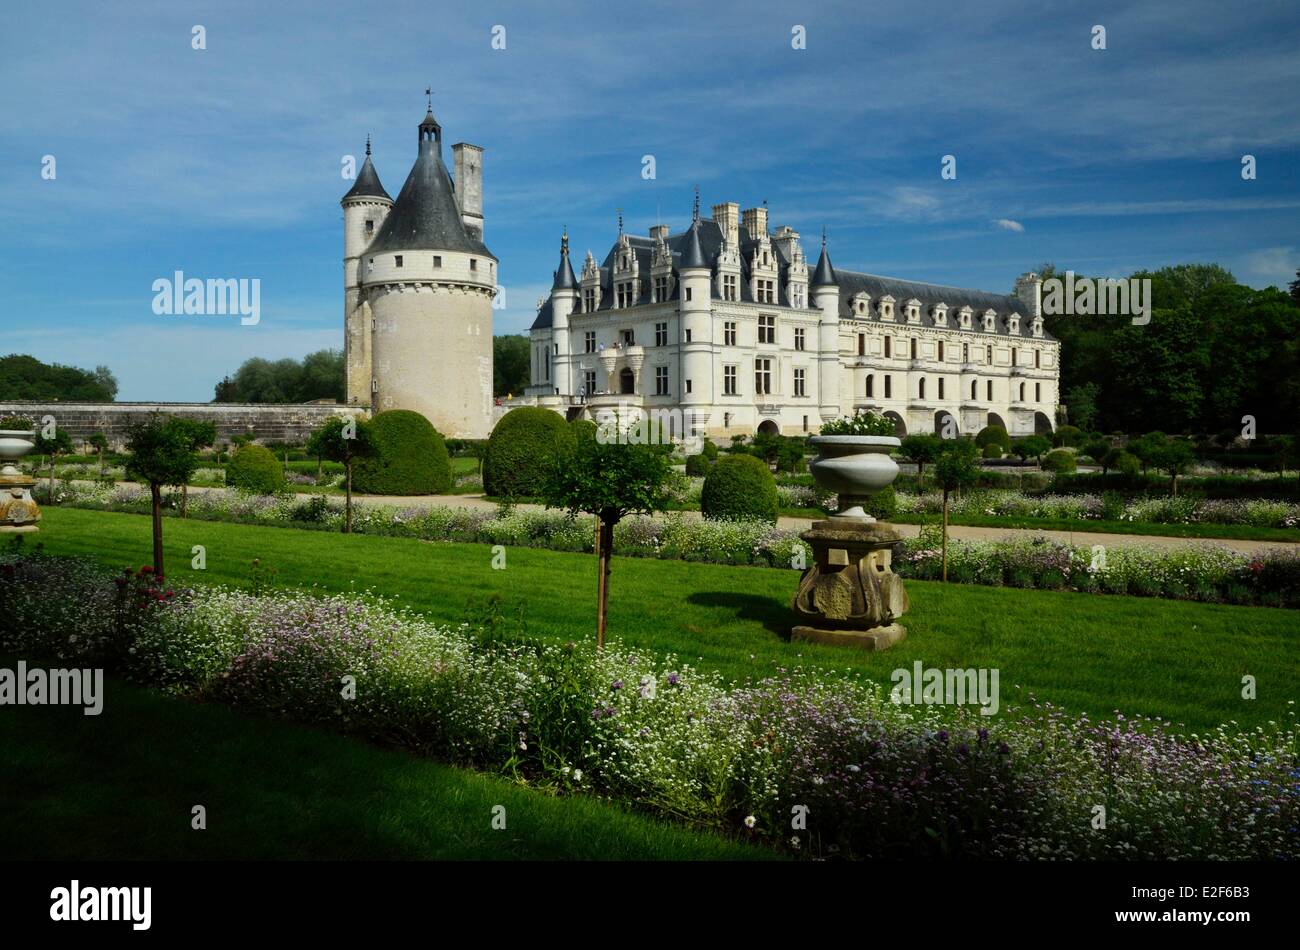 Francia, Indre et Loire, Château de Chenonceau, construida entre 1513-1521 en estilo renacentista, sobre el río Cher Foto de stock